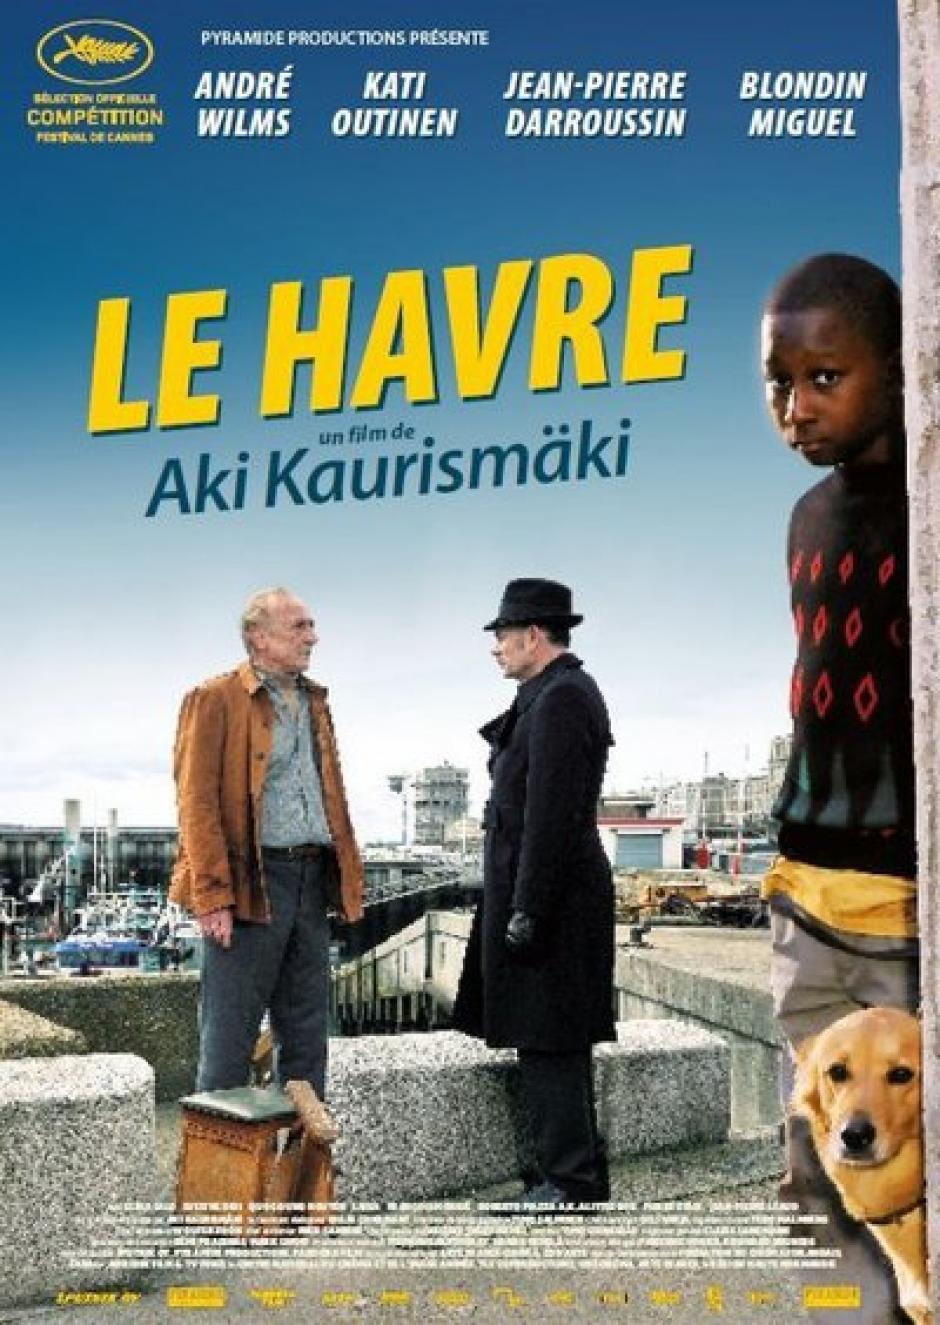 21 décembre, Montataire - Ciné-débat autour du film « Le Havre » de Haki Kaurismäki